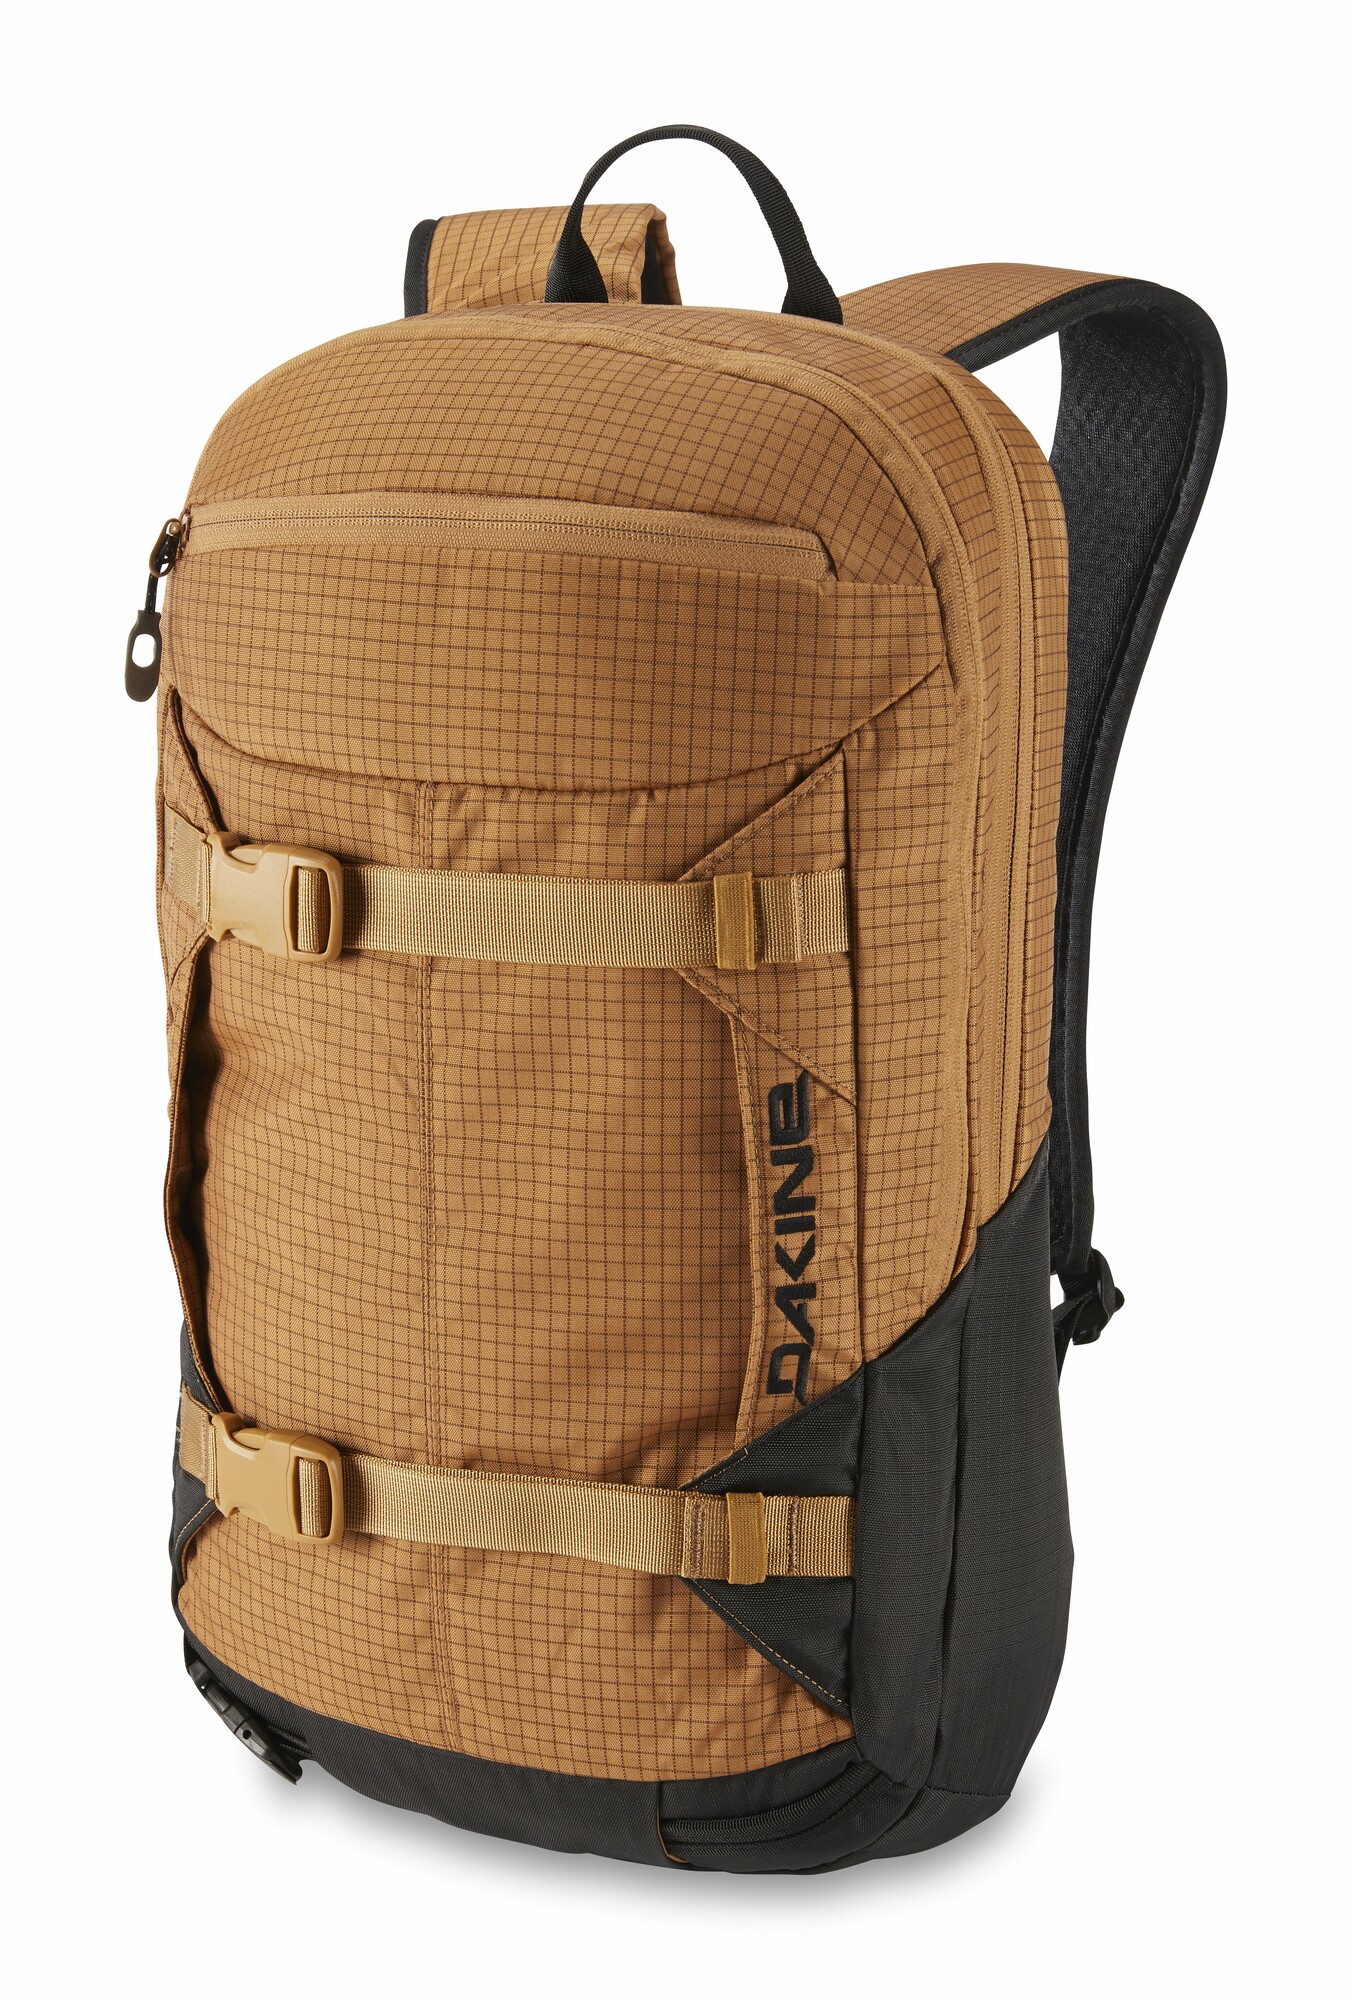 Dakine Mission Pro 18L backpack caramel